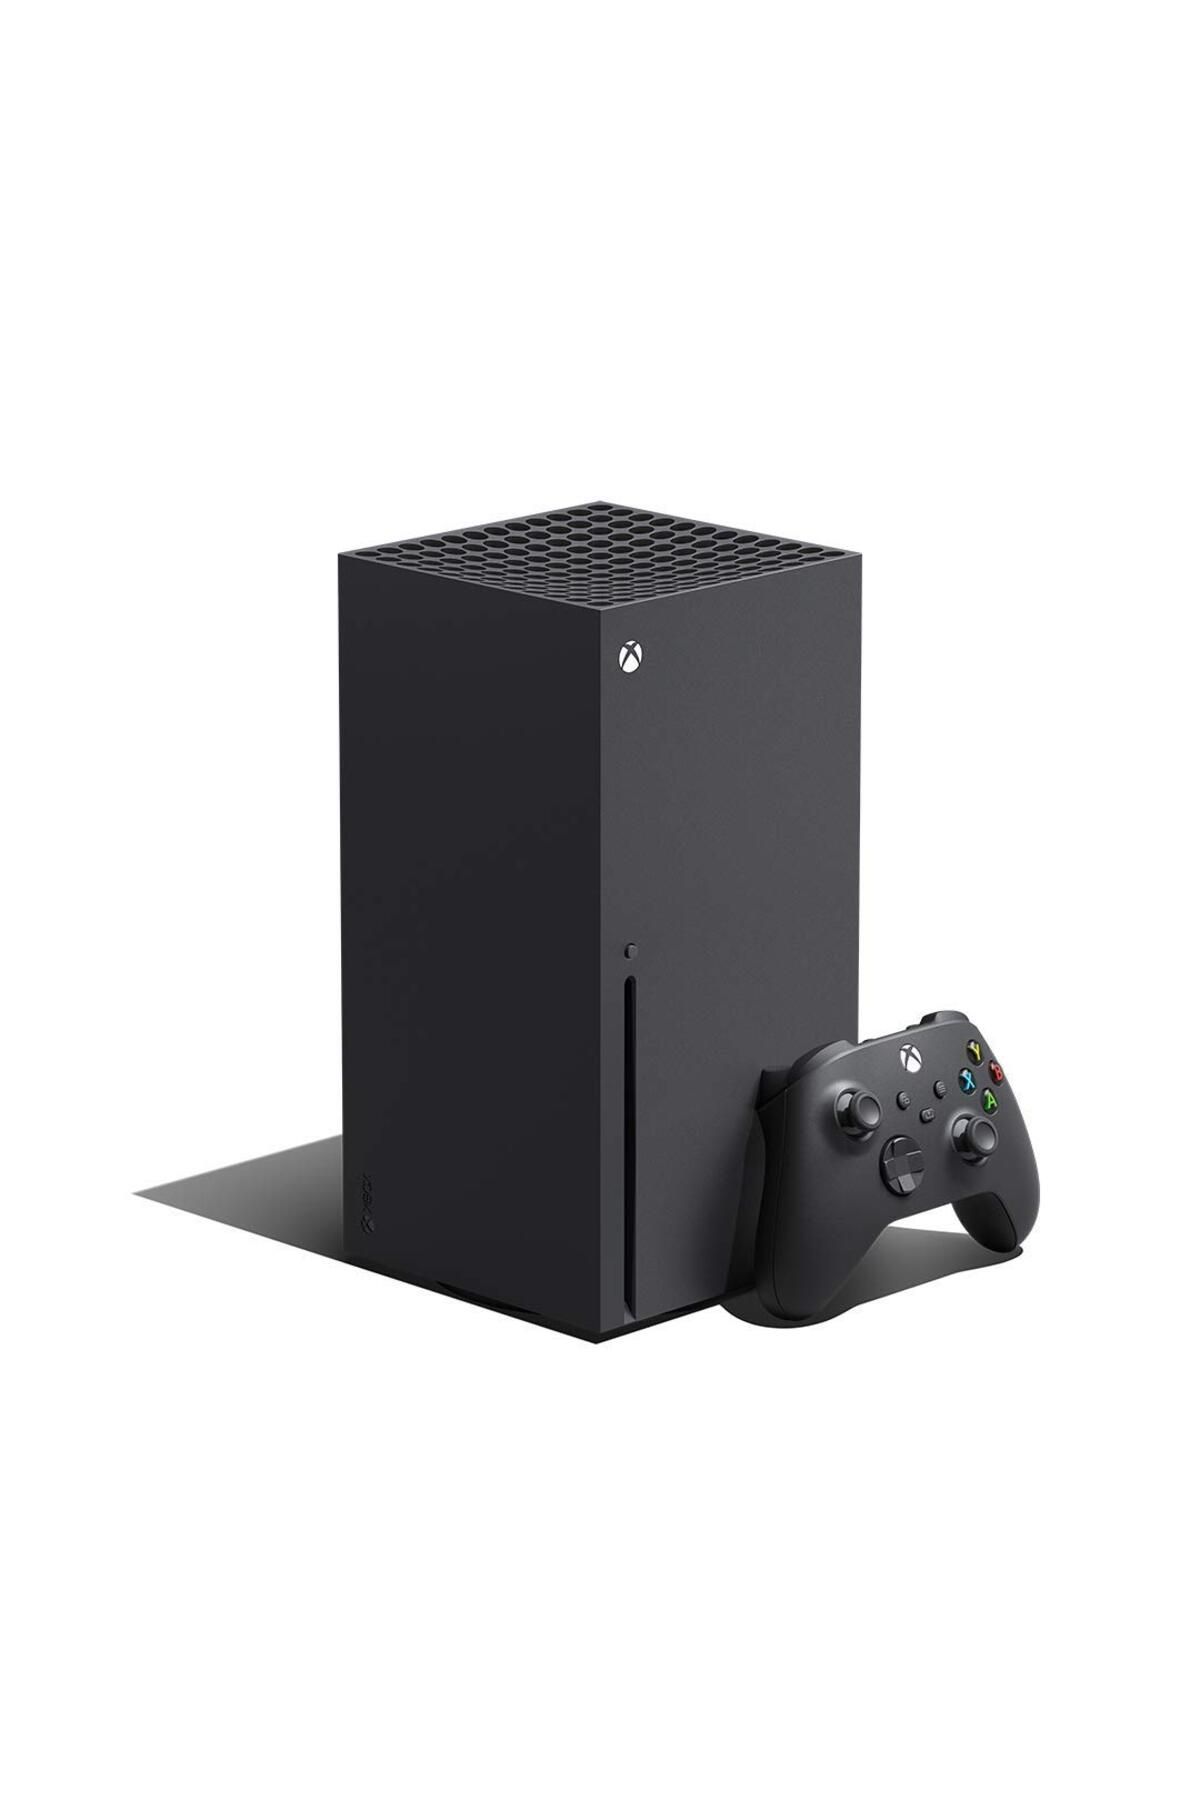 xbox Microsoft Xbox Series X 1 TB Oyun Konsolu - Siyah ( TEŞHİR ÜRÜNÜ ) 1 YIL GARANTİLİ